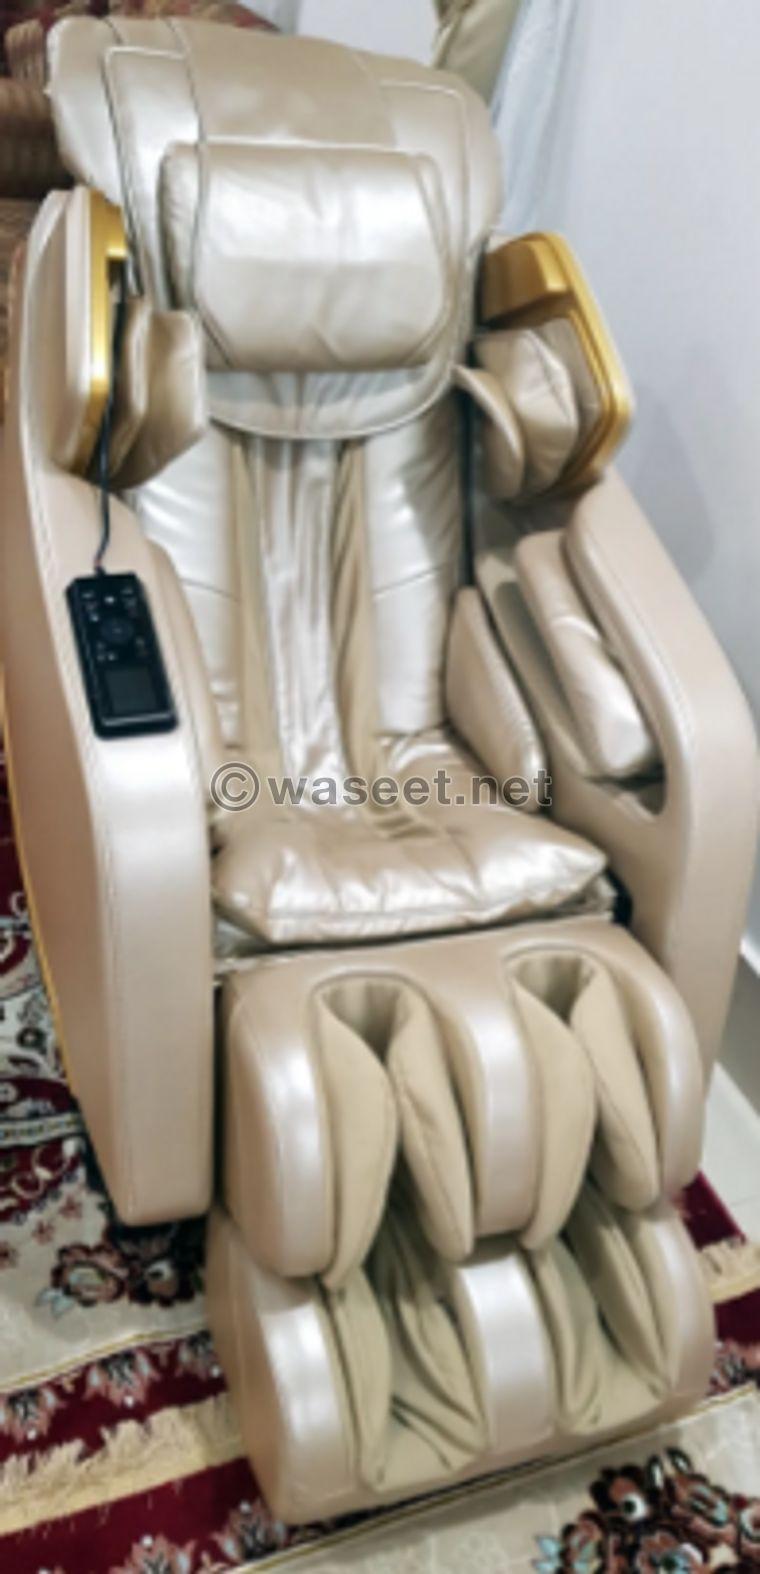 Isakushi massage chair 2